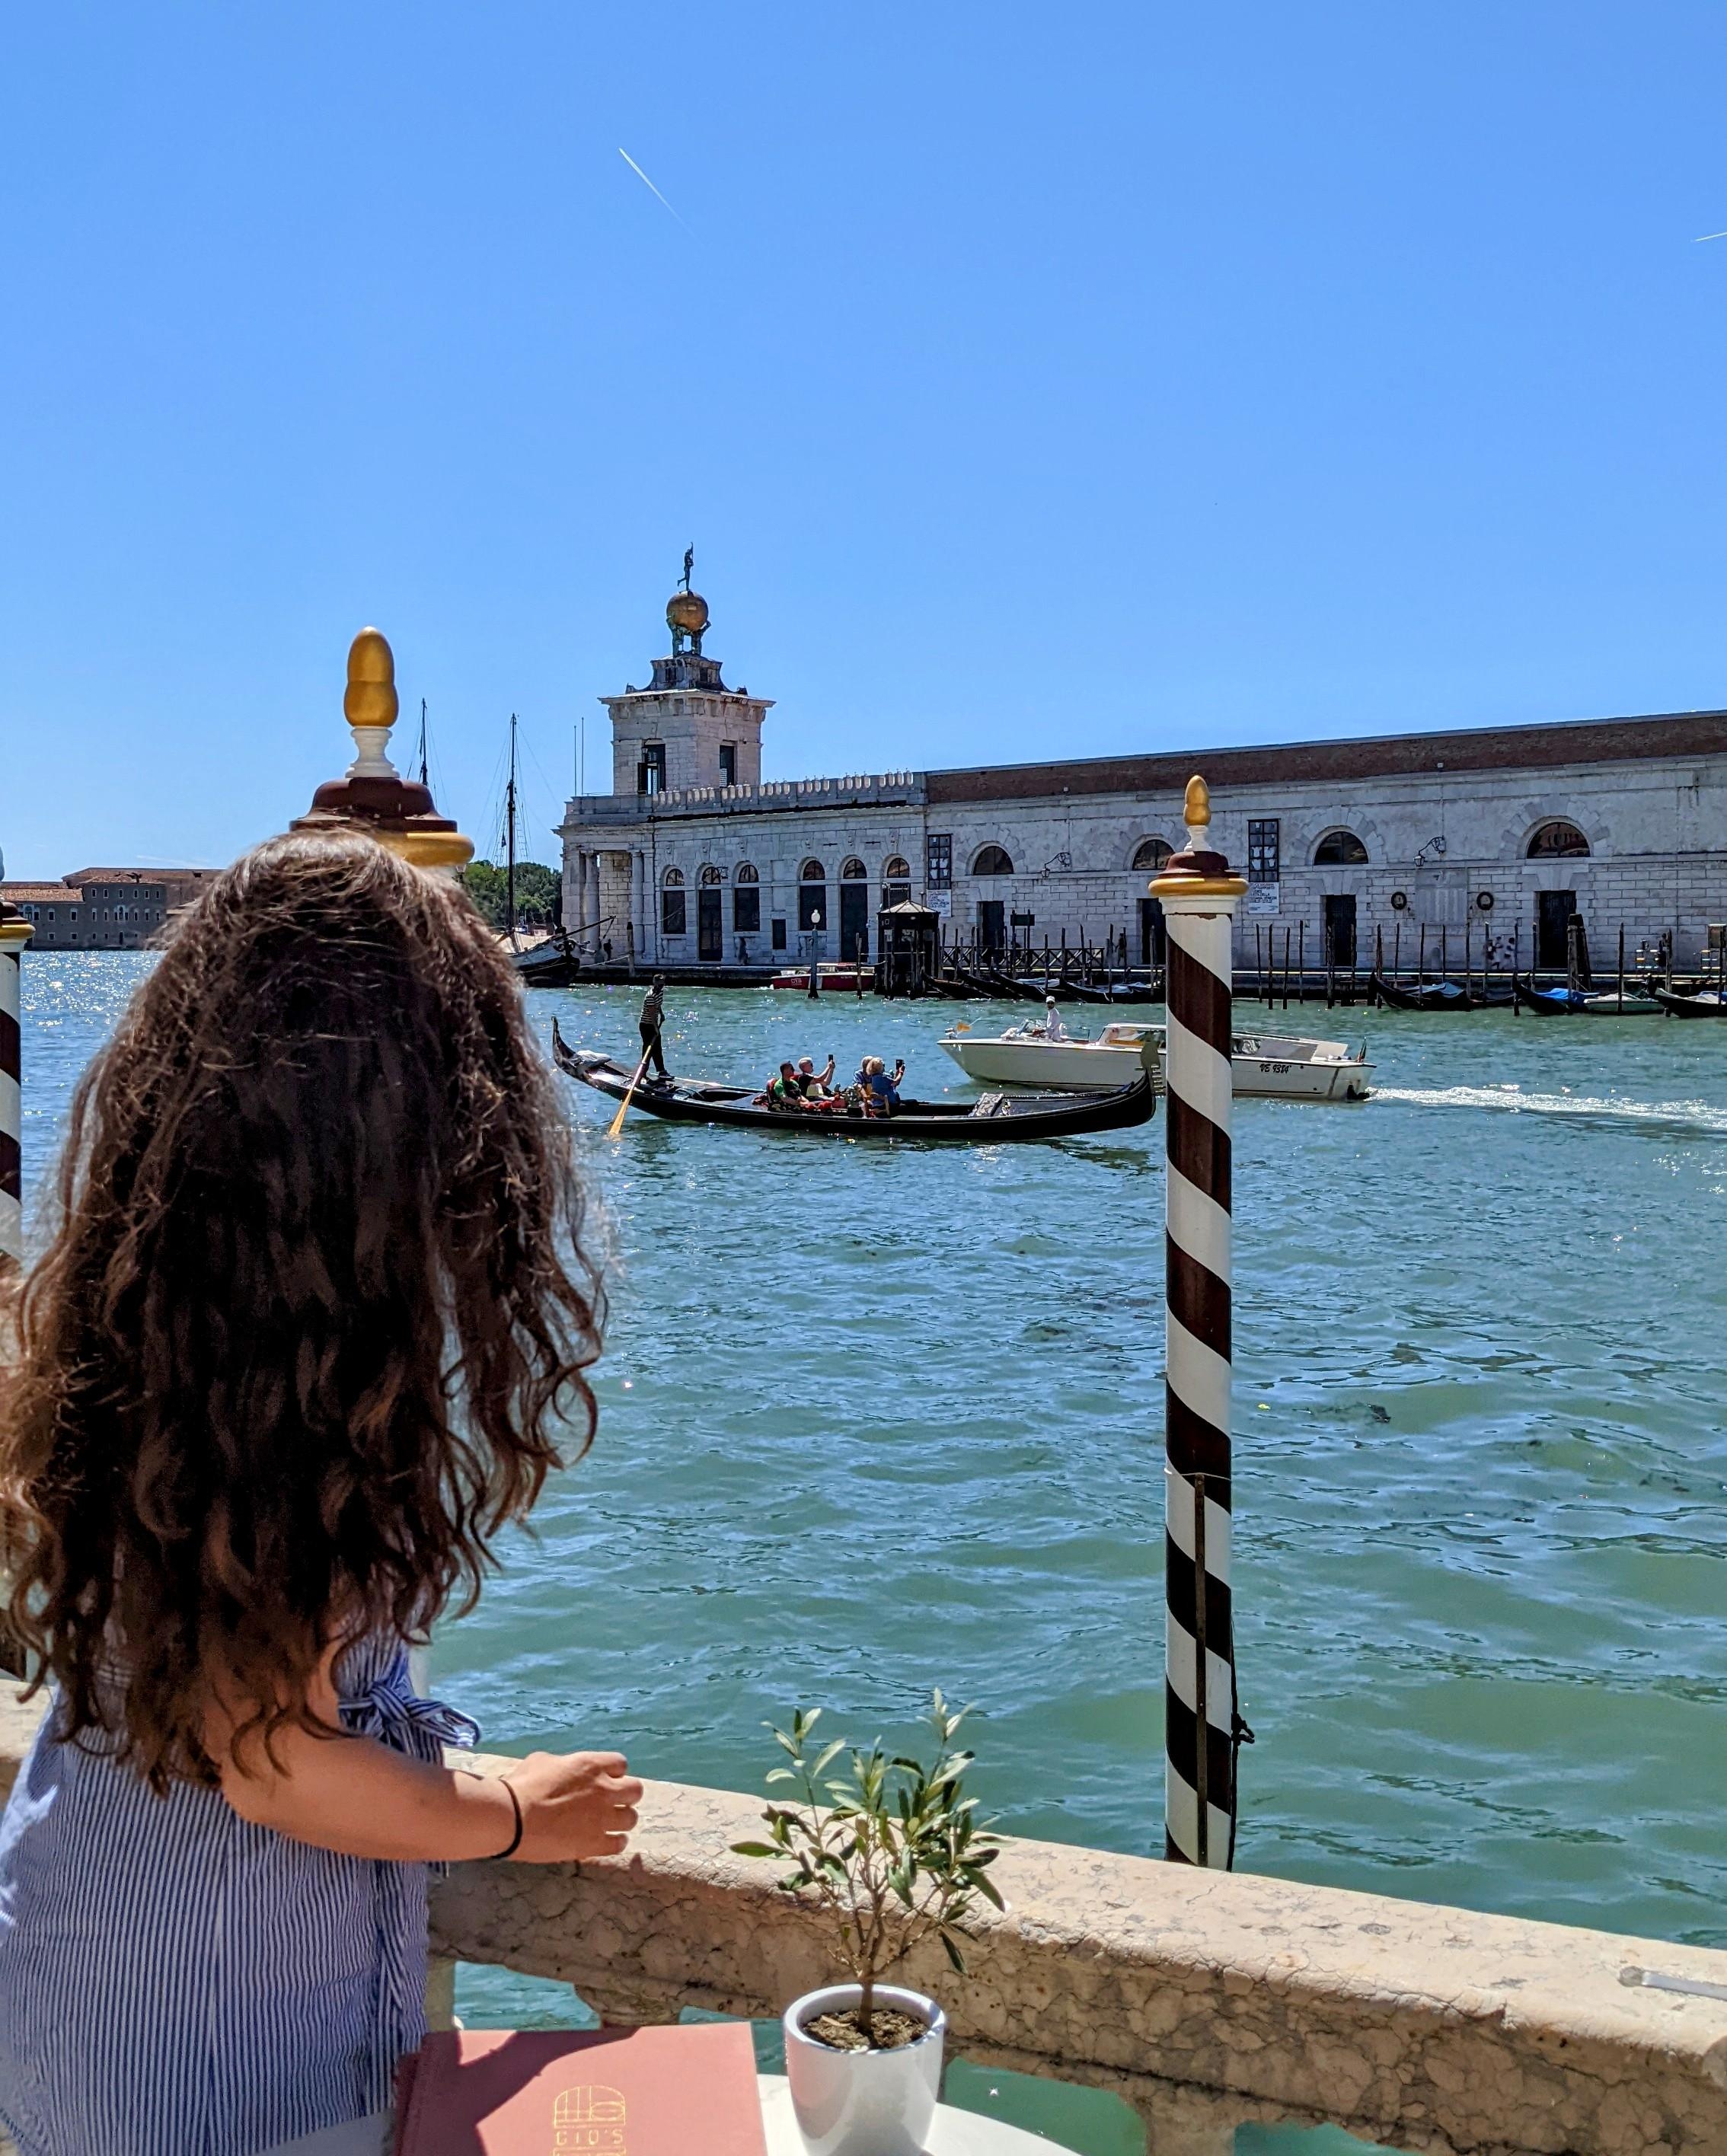 Wir waren vor ein paar Tagen in Venedig. Es war herrlich. ☀️
#urlaub #italien #ferien #venedig #farhenfroh